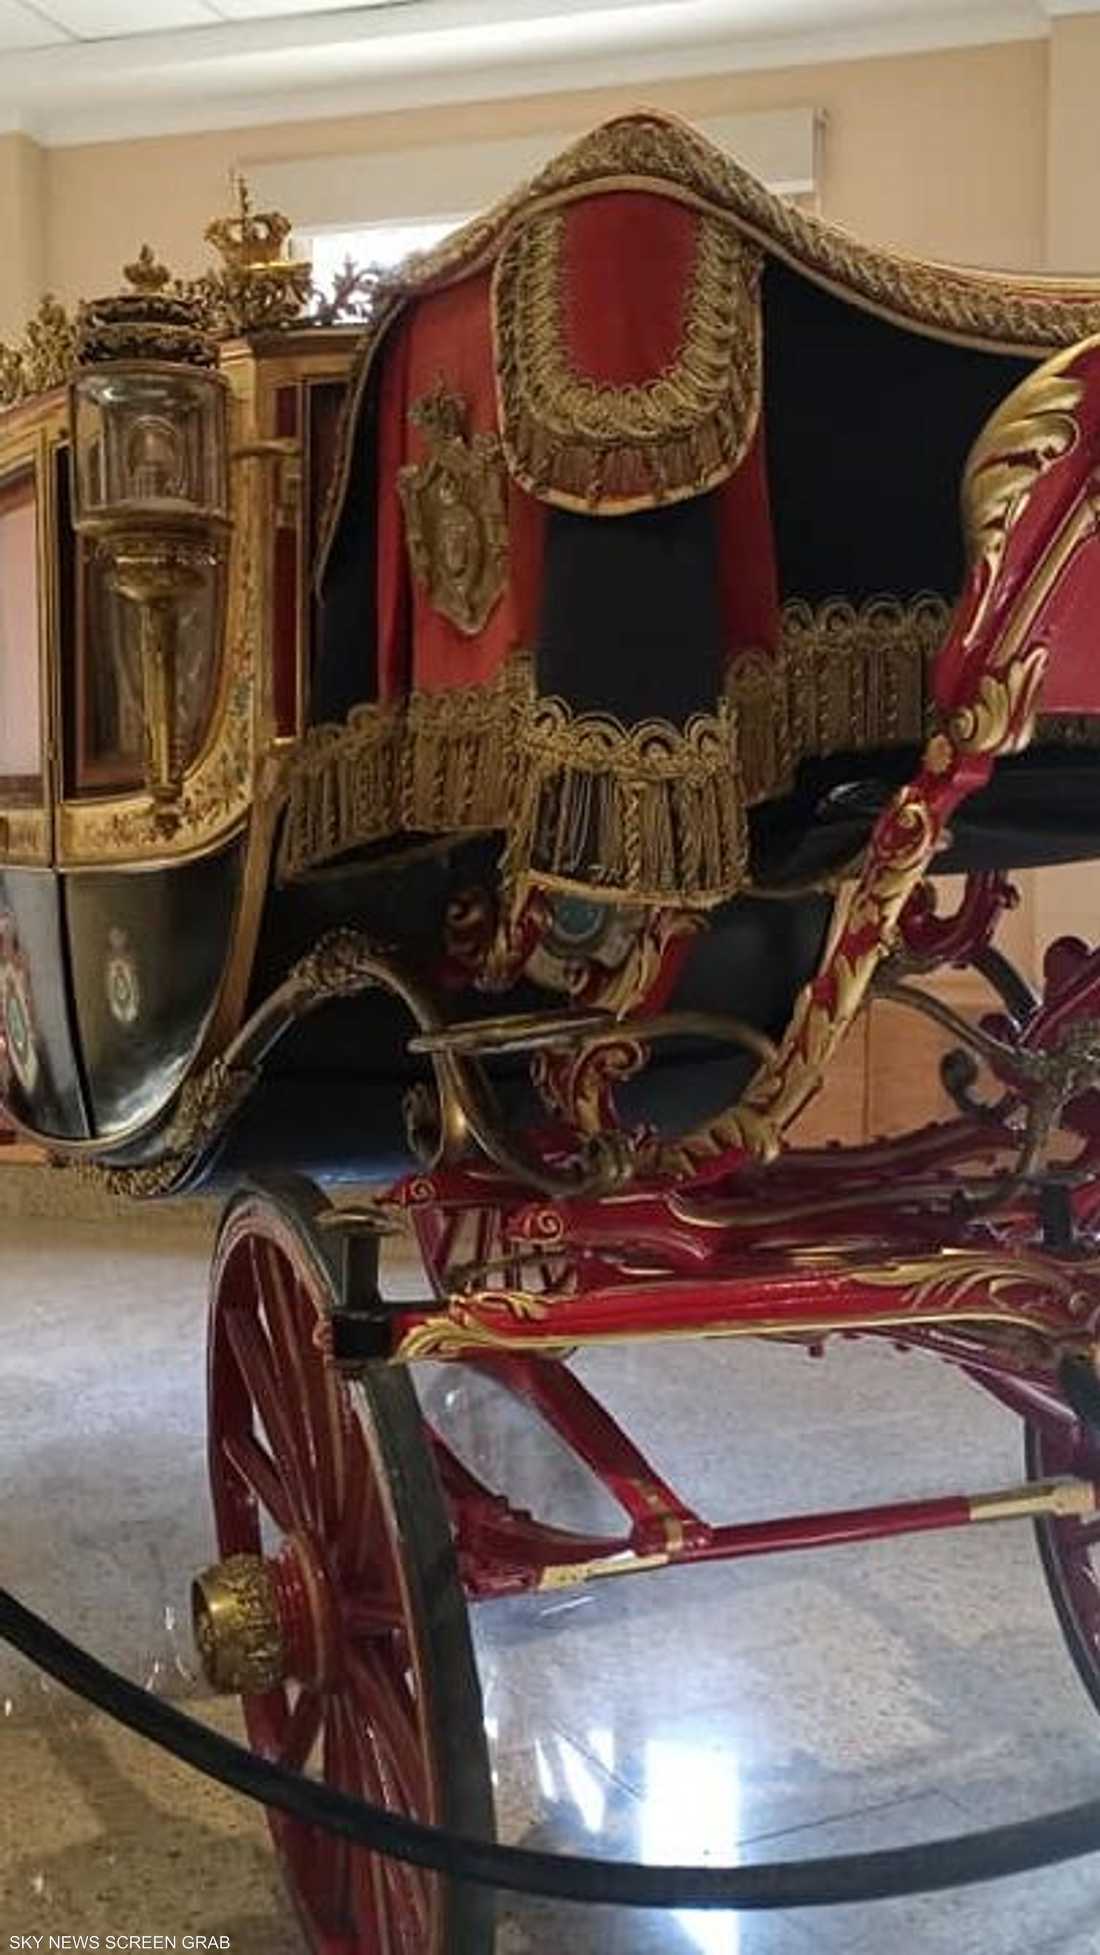 عربة الآلاي الكبرى.. هدية من الإمبراطورة أوجيني زوجة نابليون